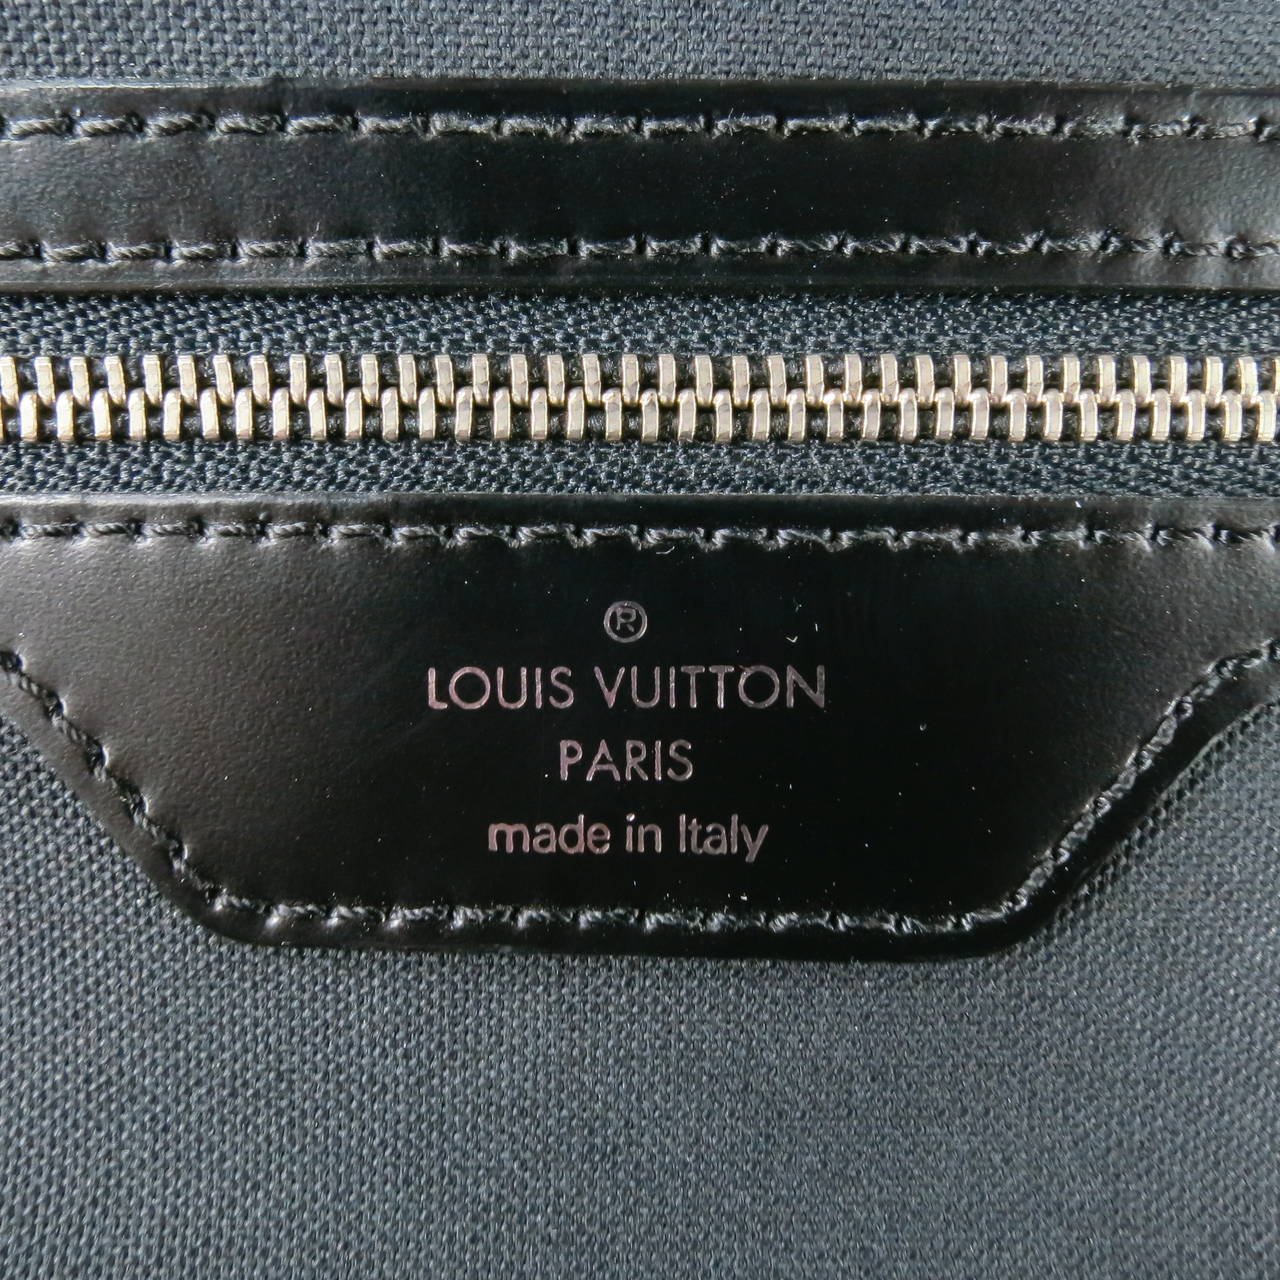 LOUIS VUITTON -VIKTOR- Black Leather Messenger Shoulder Bag 3